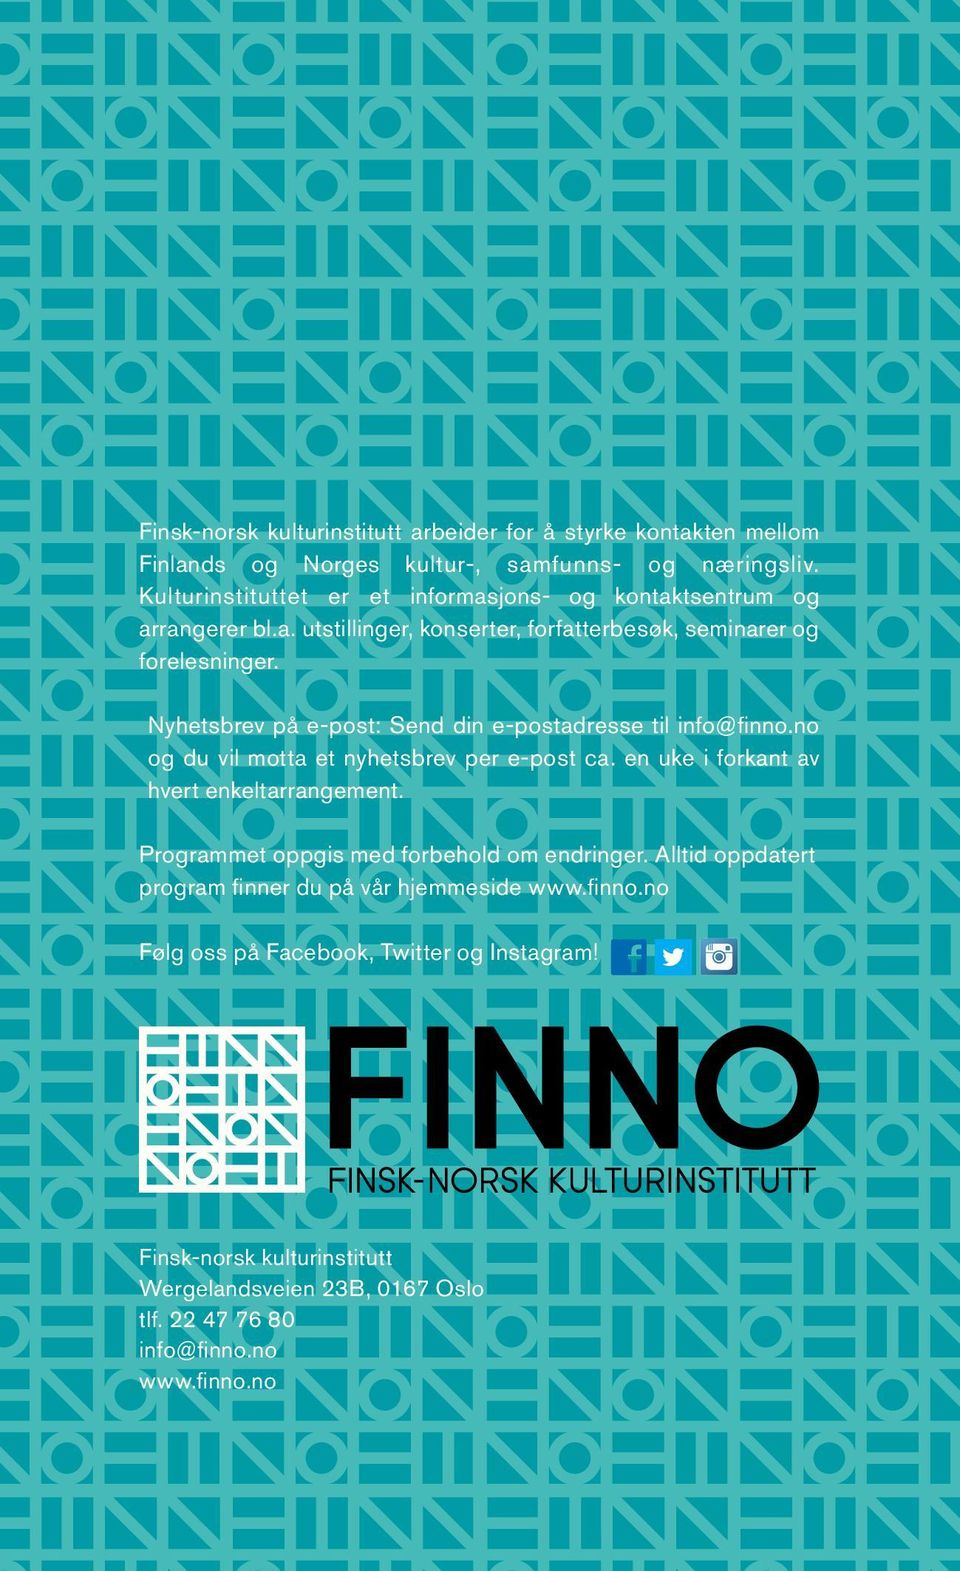 Nyhetsbrev på e-post: Send din e-postadresse til info@finno.no og du vil motta et nyhetsbrev per e-post ca. en uke i forkant av hvert enkeltarrangement.